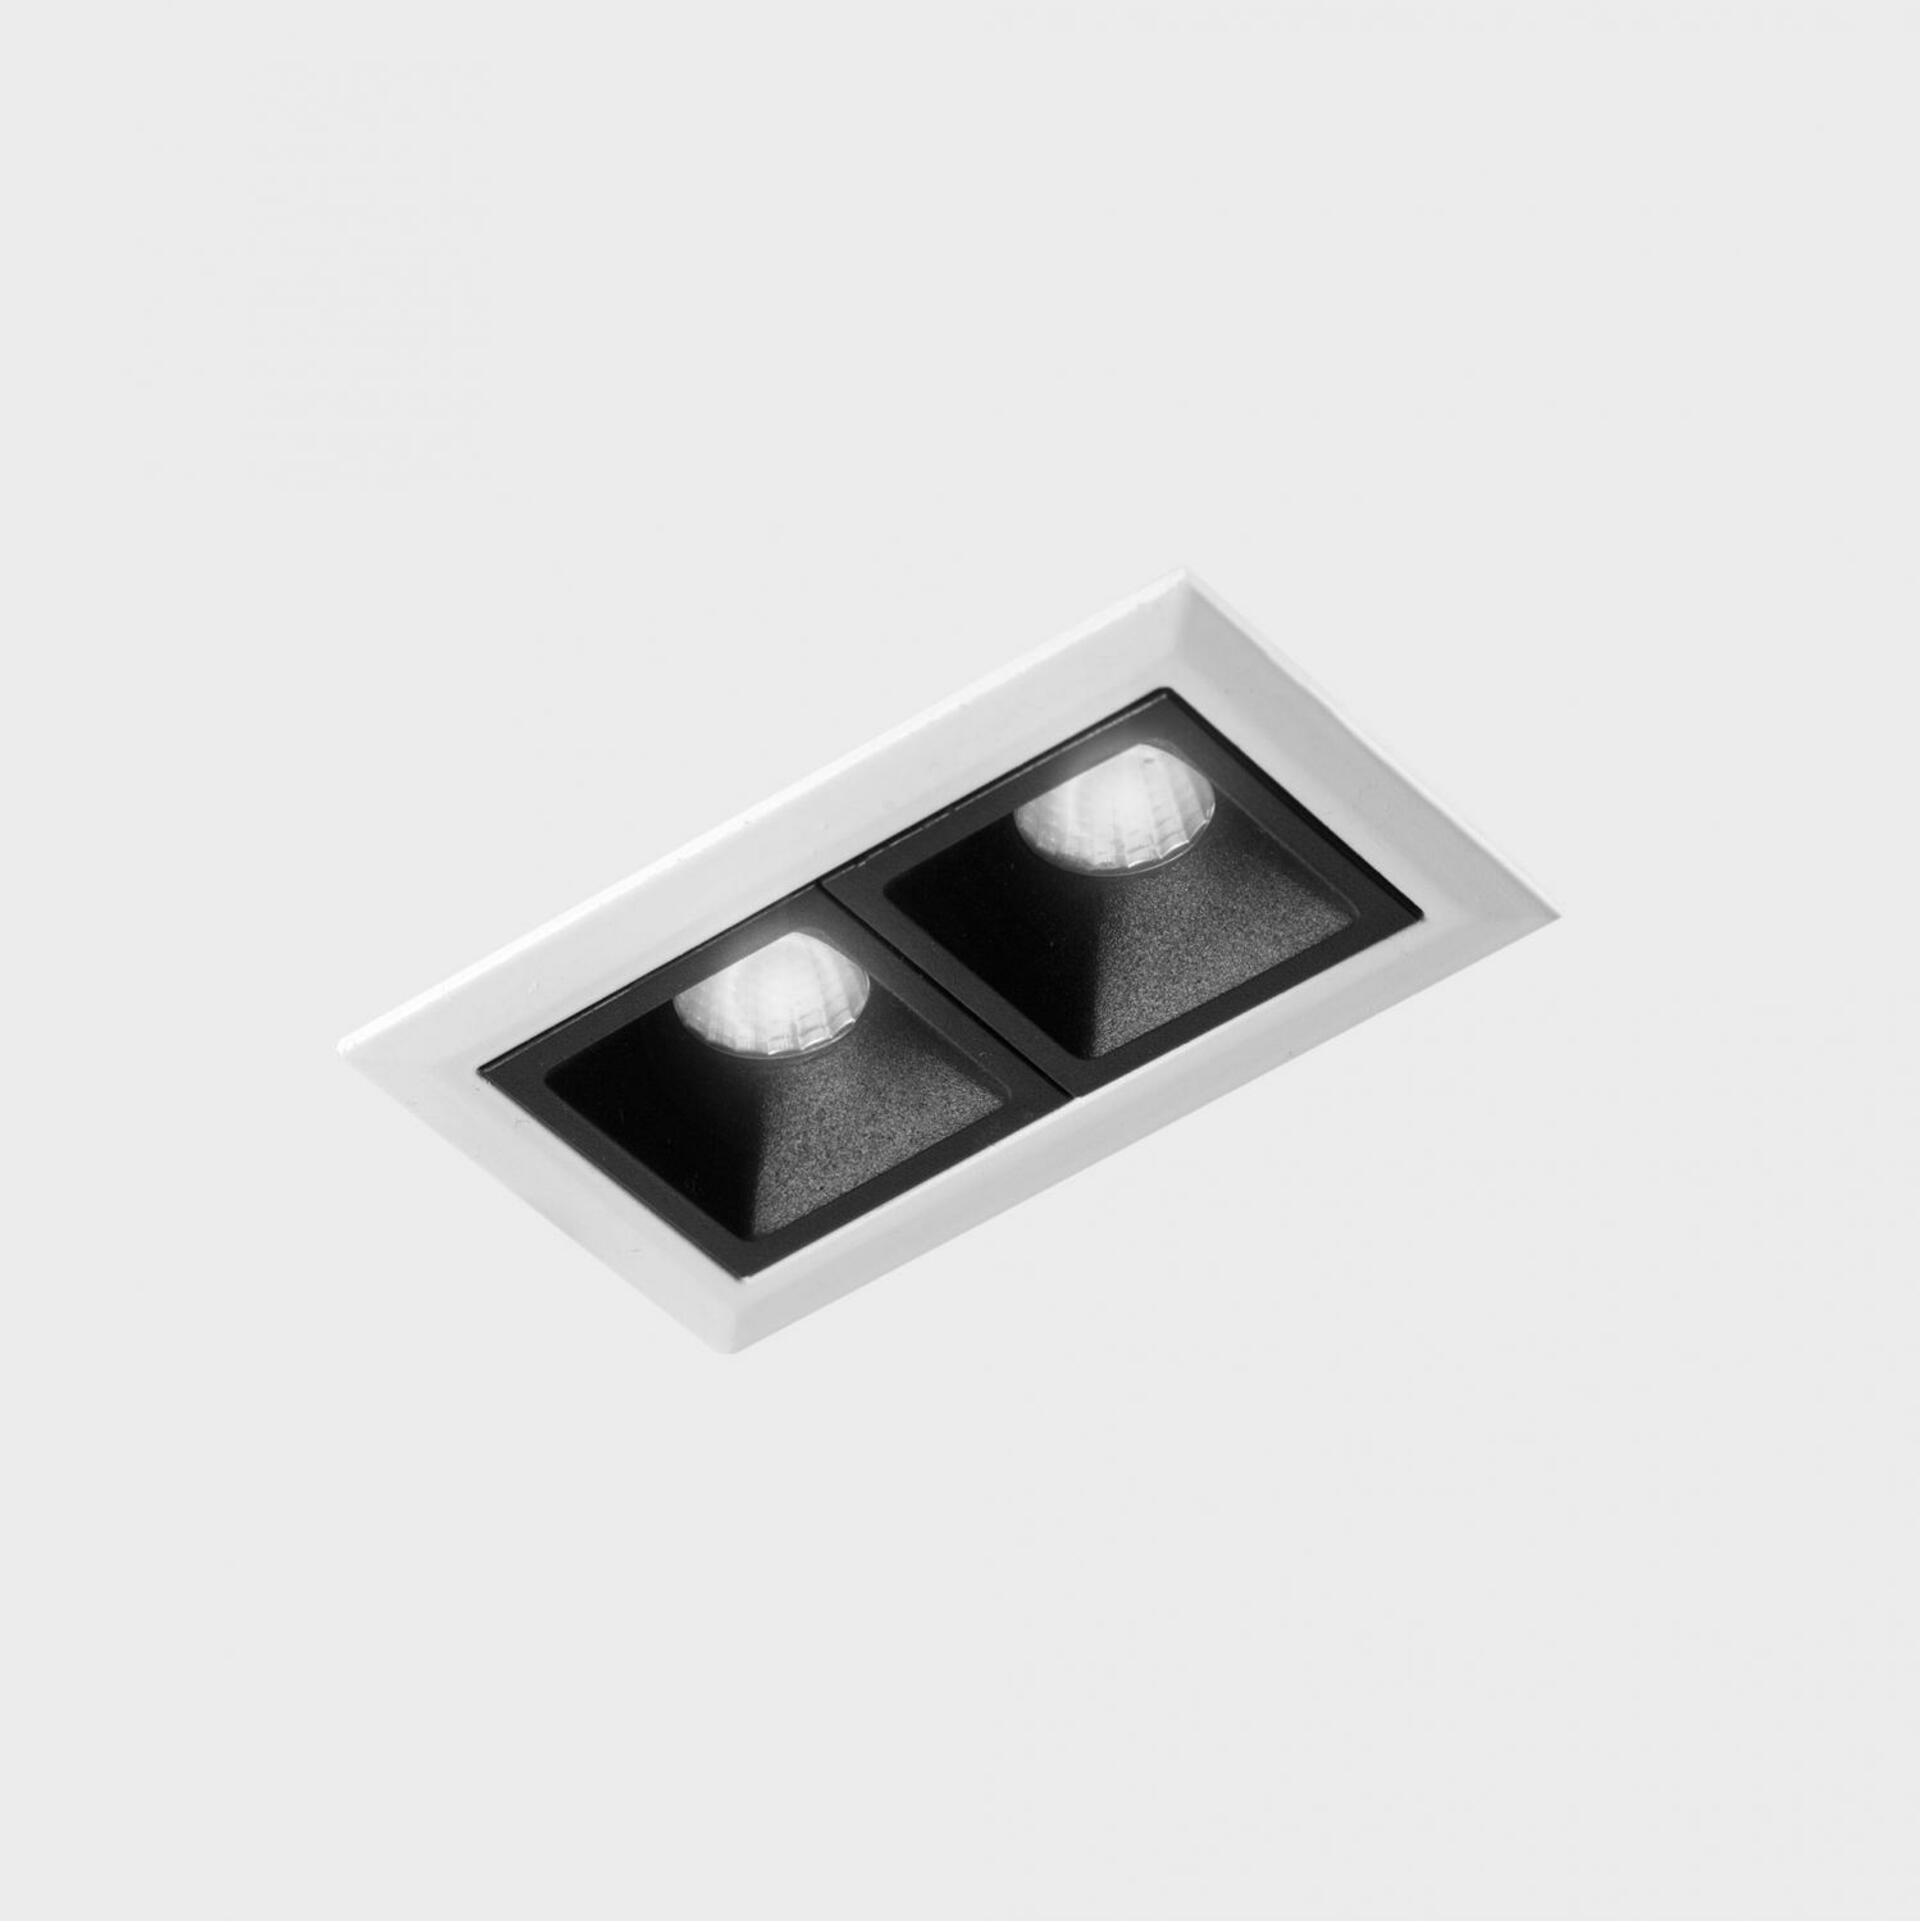 KOHL LIGHTING KOHL-Lighting NSES zapuštěné svítidlo s rámečkem 75x45 mm bílá-černá 4 W CRI 90 3000K DALI